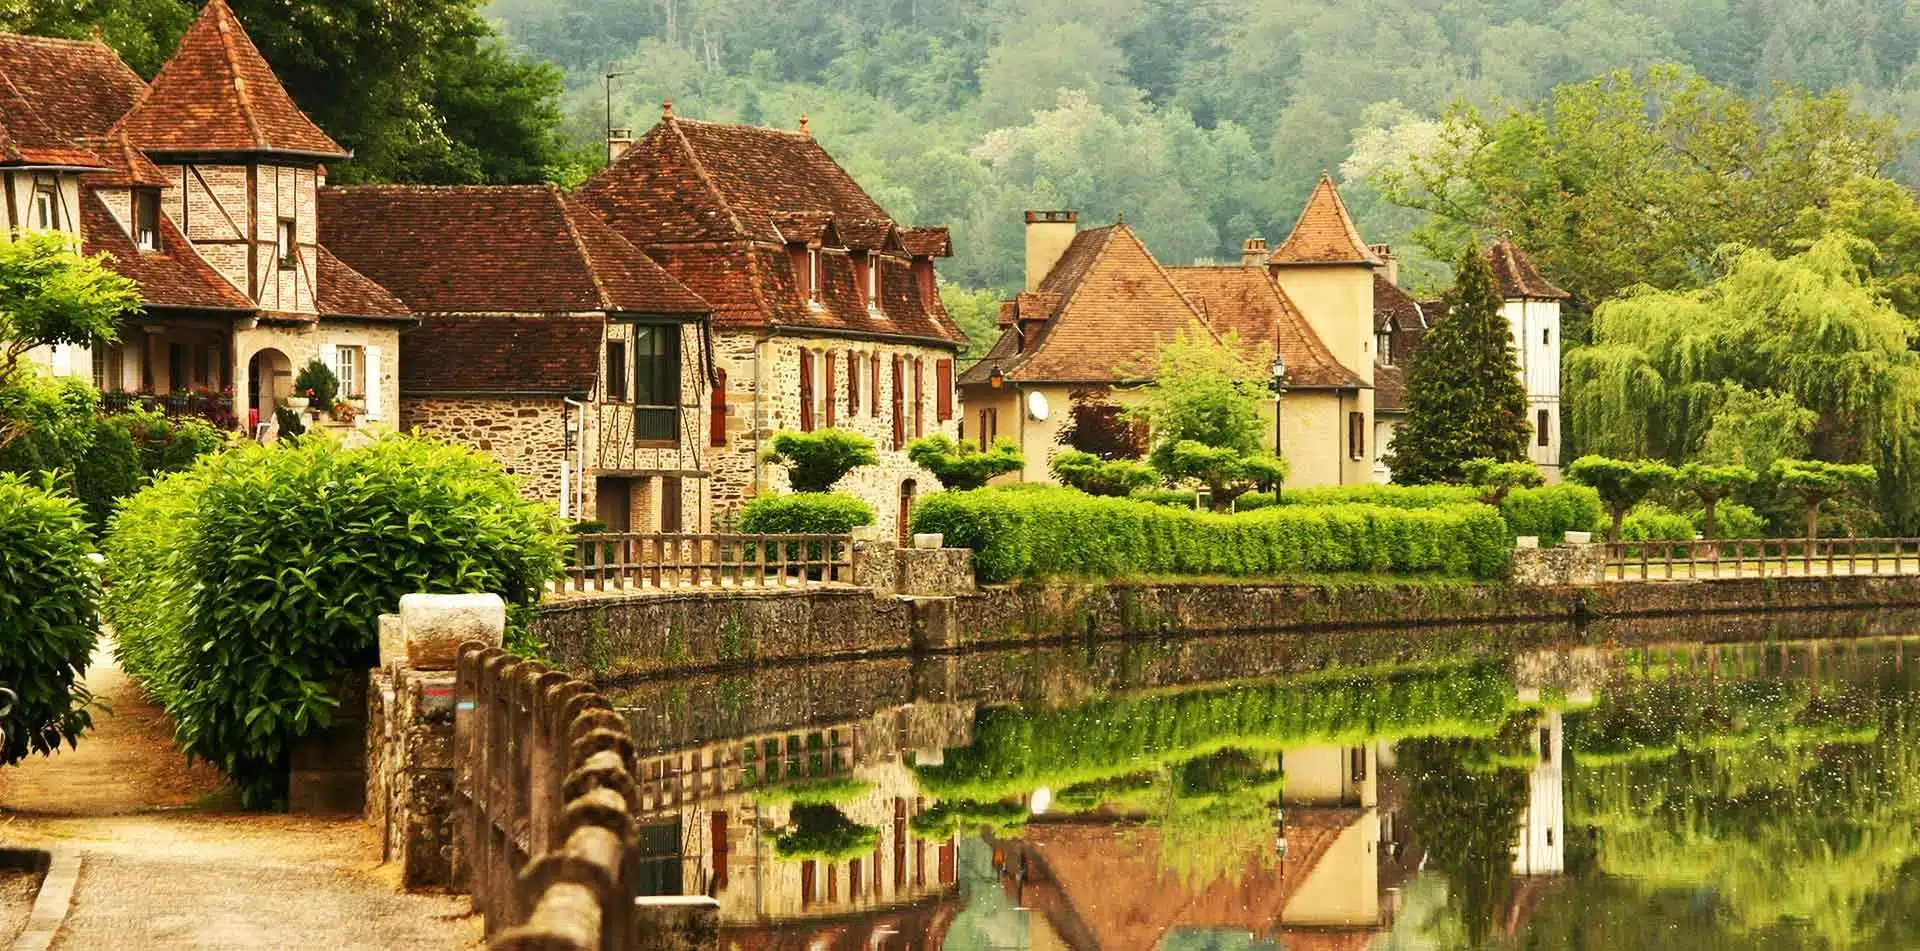 France's scenic Dordogne Valley